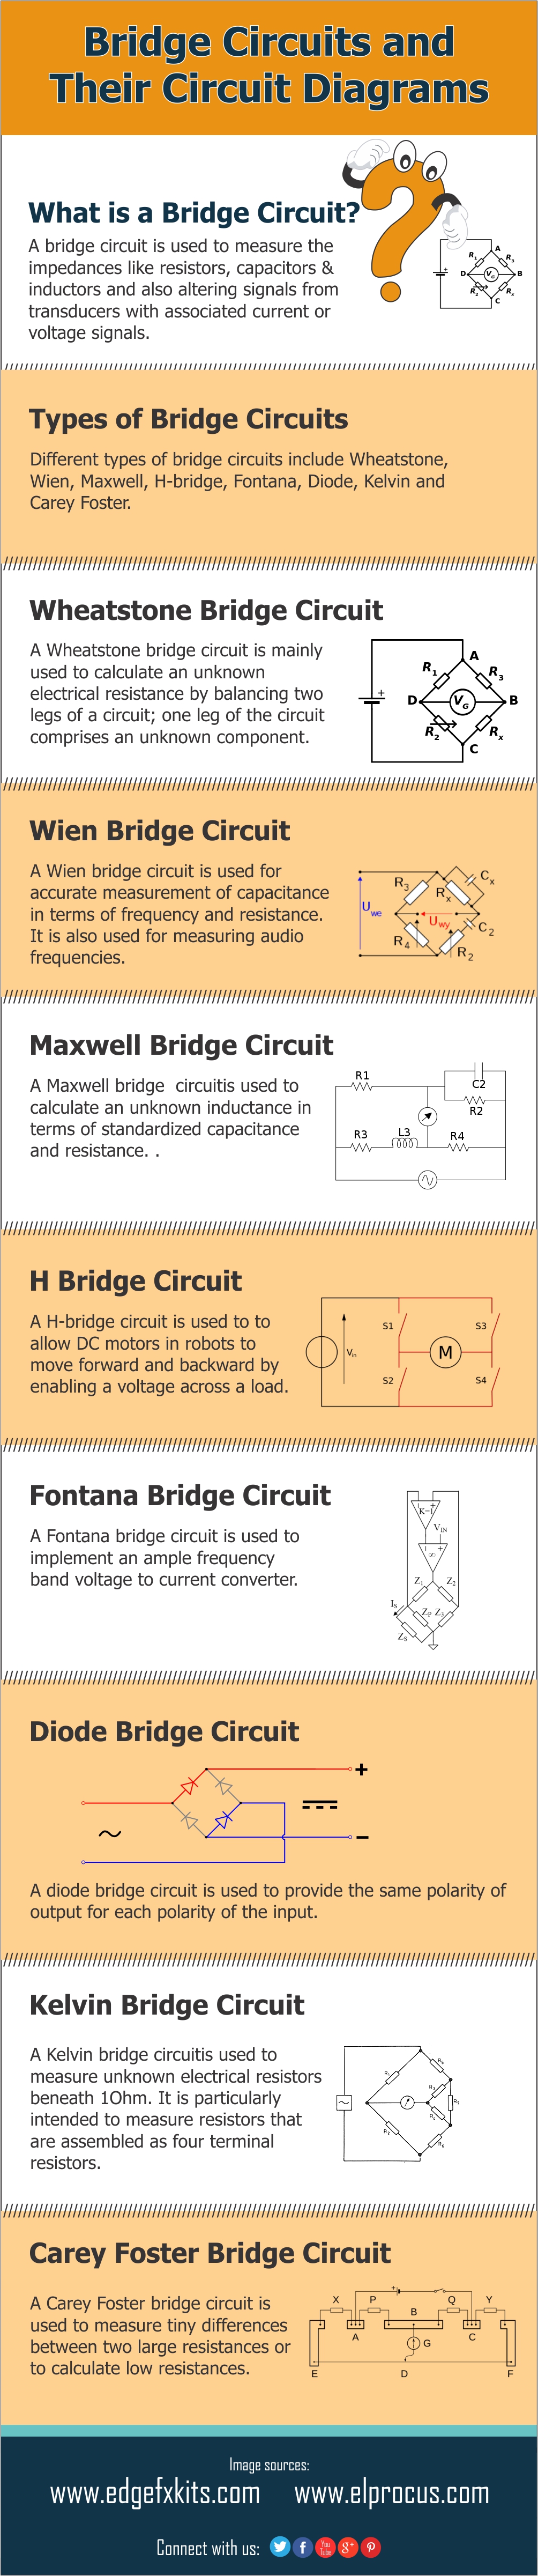 Diferentes tipos de circuitos en puente y sus diagramas de circuito